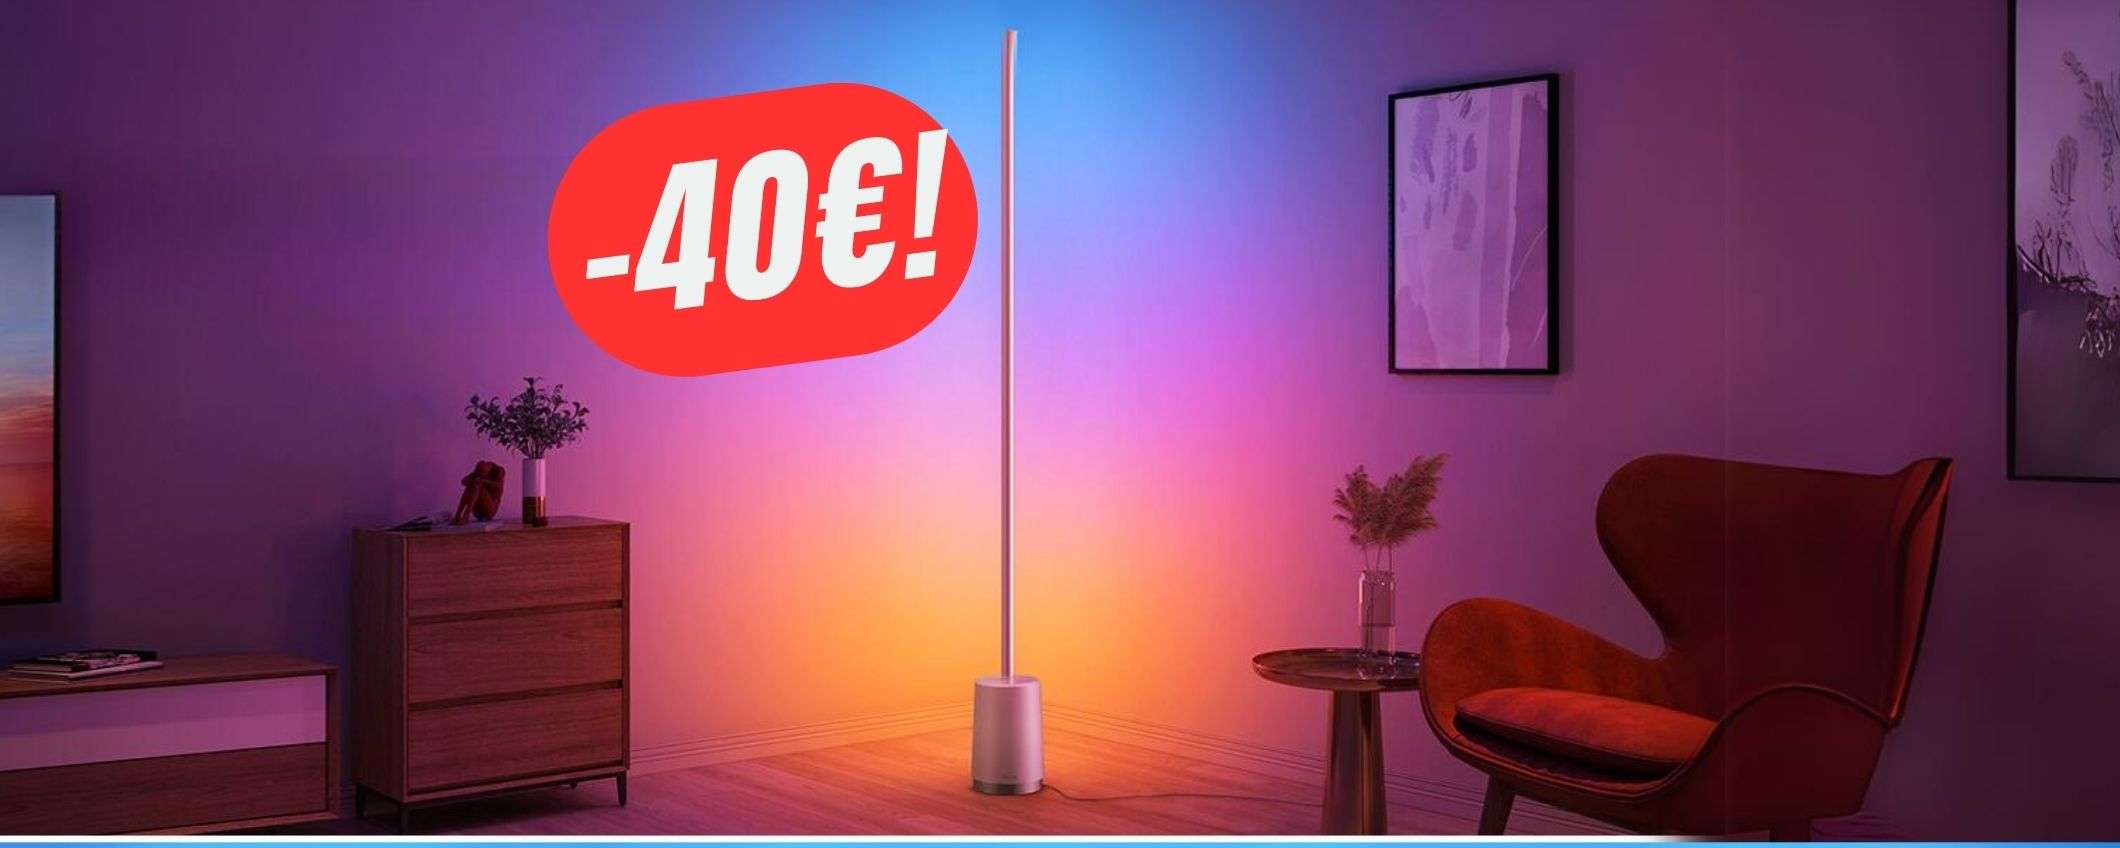 COUPON da 40€ per la LAMPADA RGB che cambierà il tuo salotto!